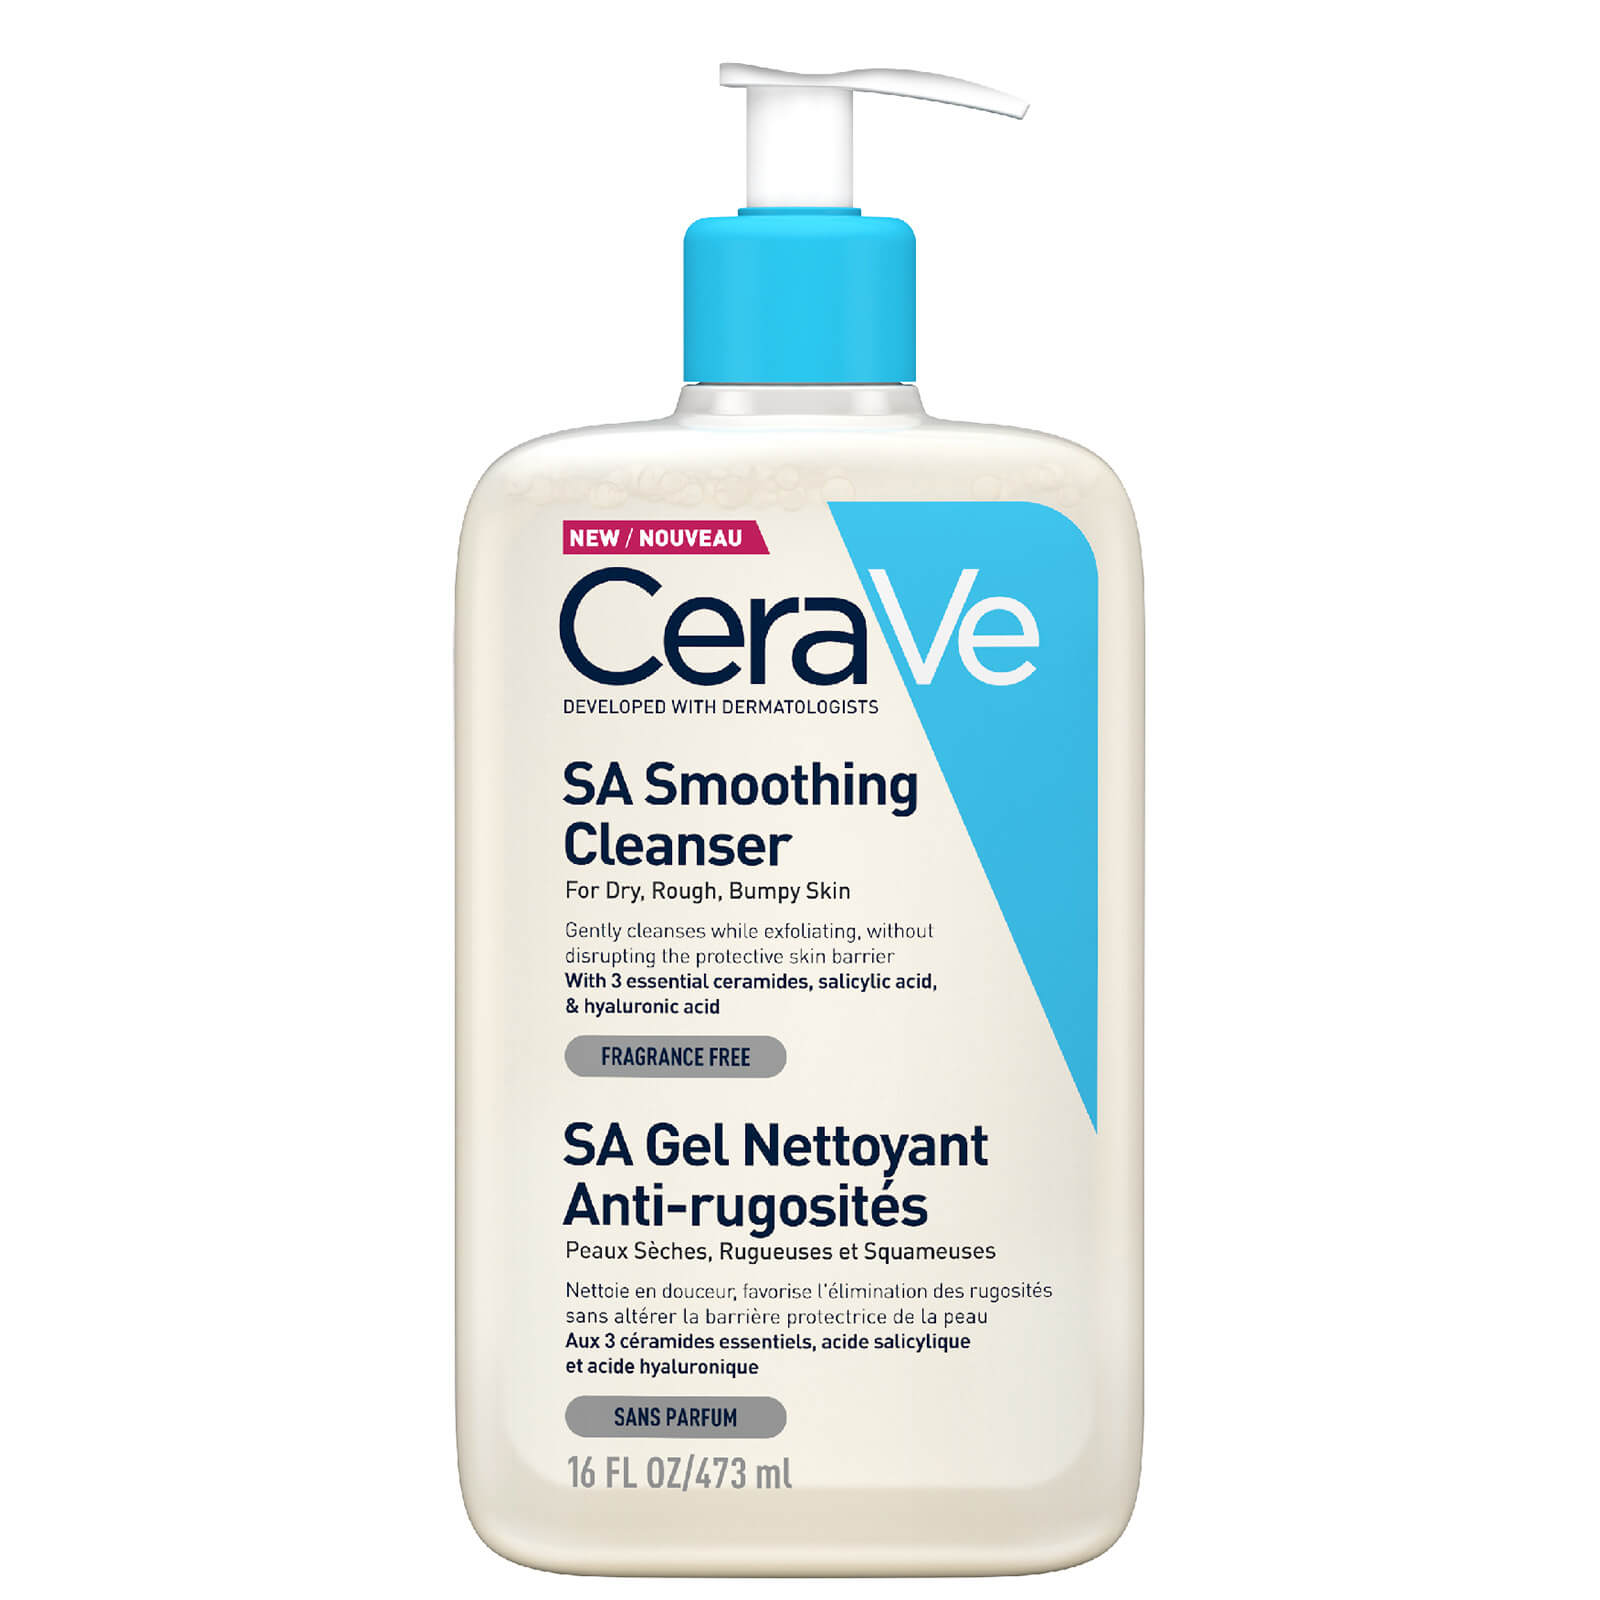 Image of CeraVe SA Smoothing Detergente con Salicylic Acid per Pelle Secca, Ruvida e Irregolare 473ml